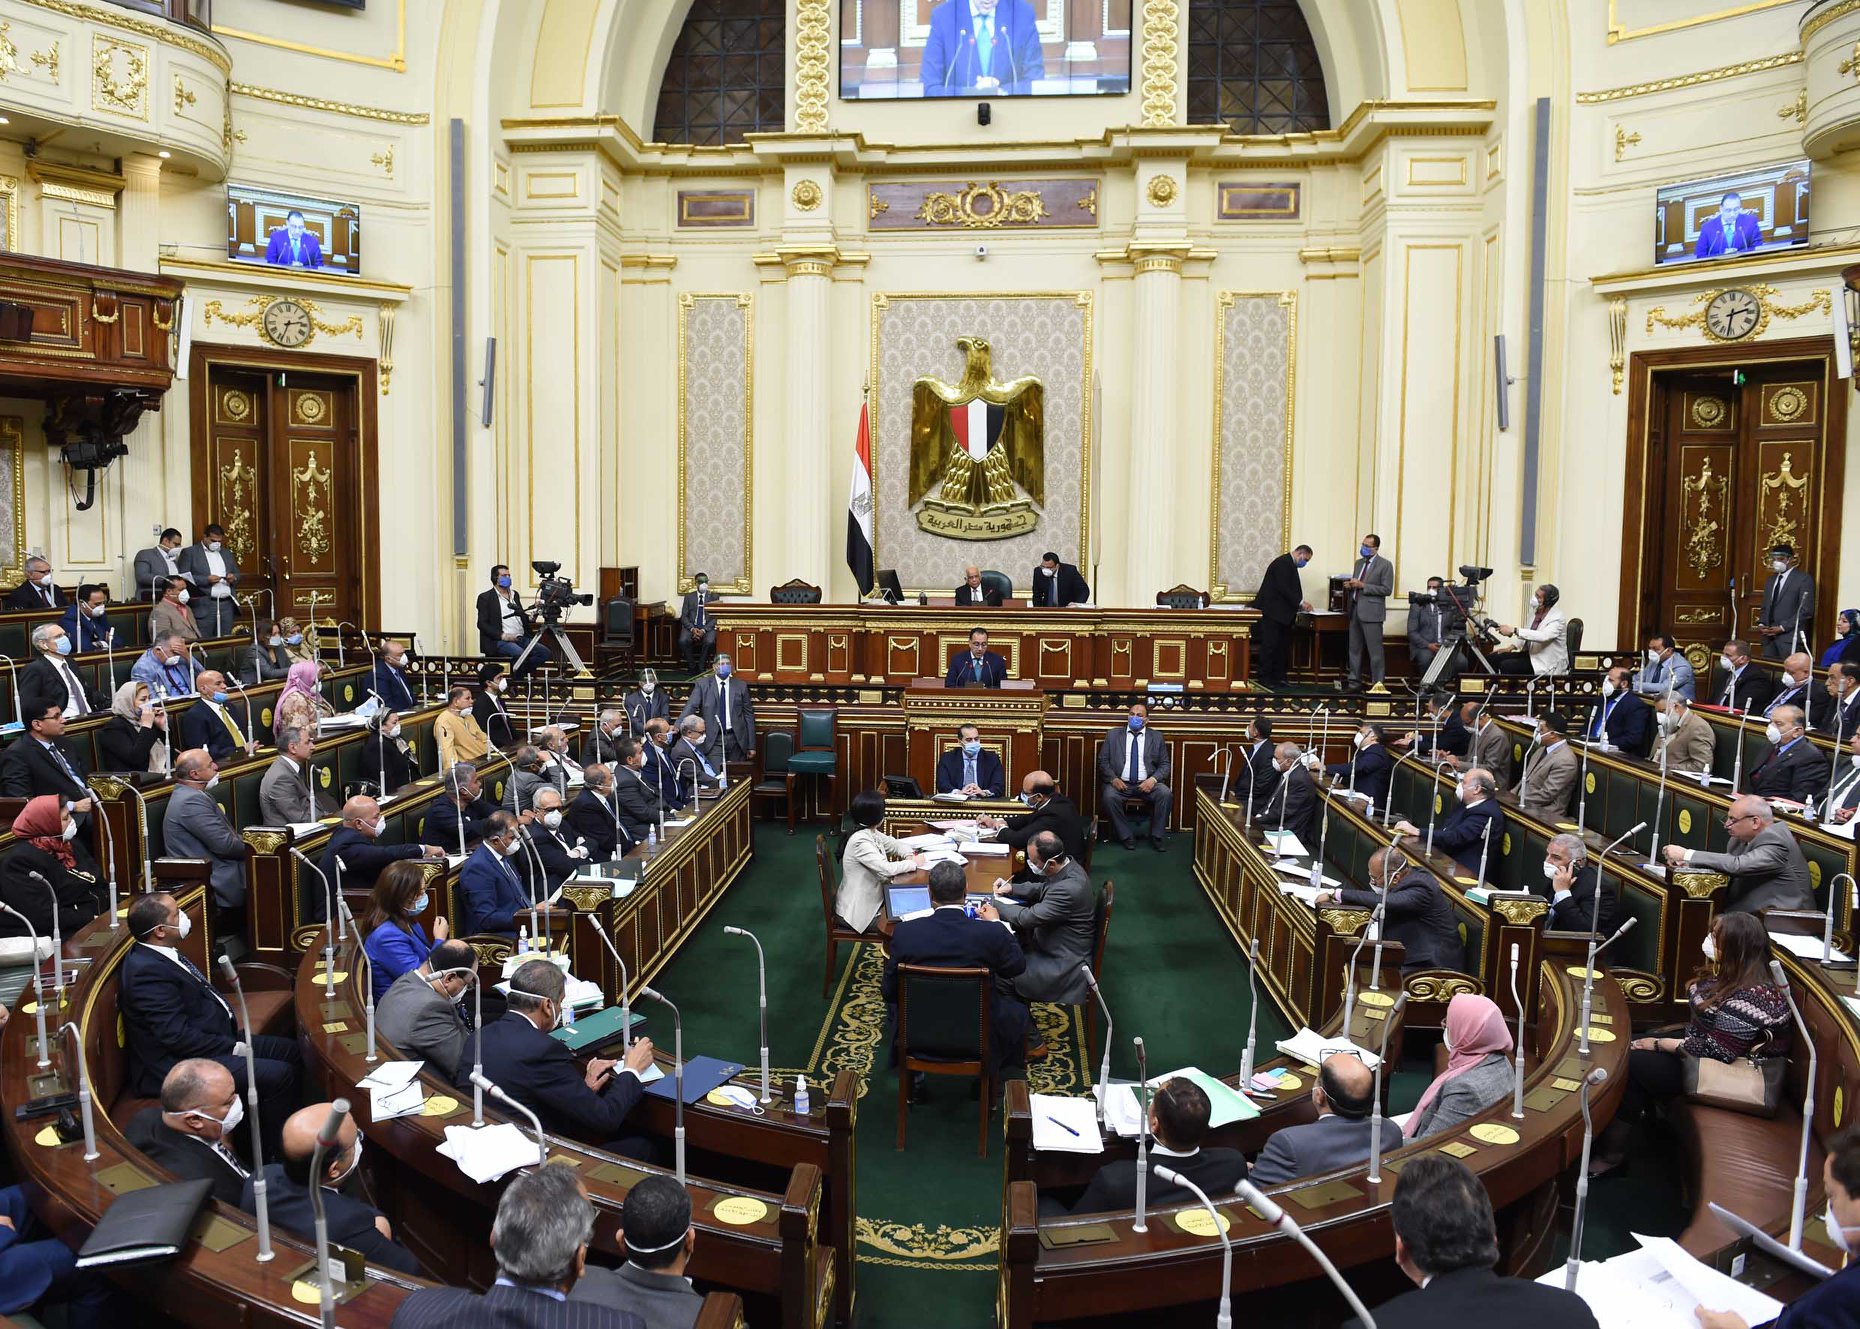 أسماء الوزراء الجُدد في الحكومة المصرية بعد موافقة البرلمان على تعيينهم